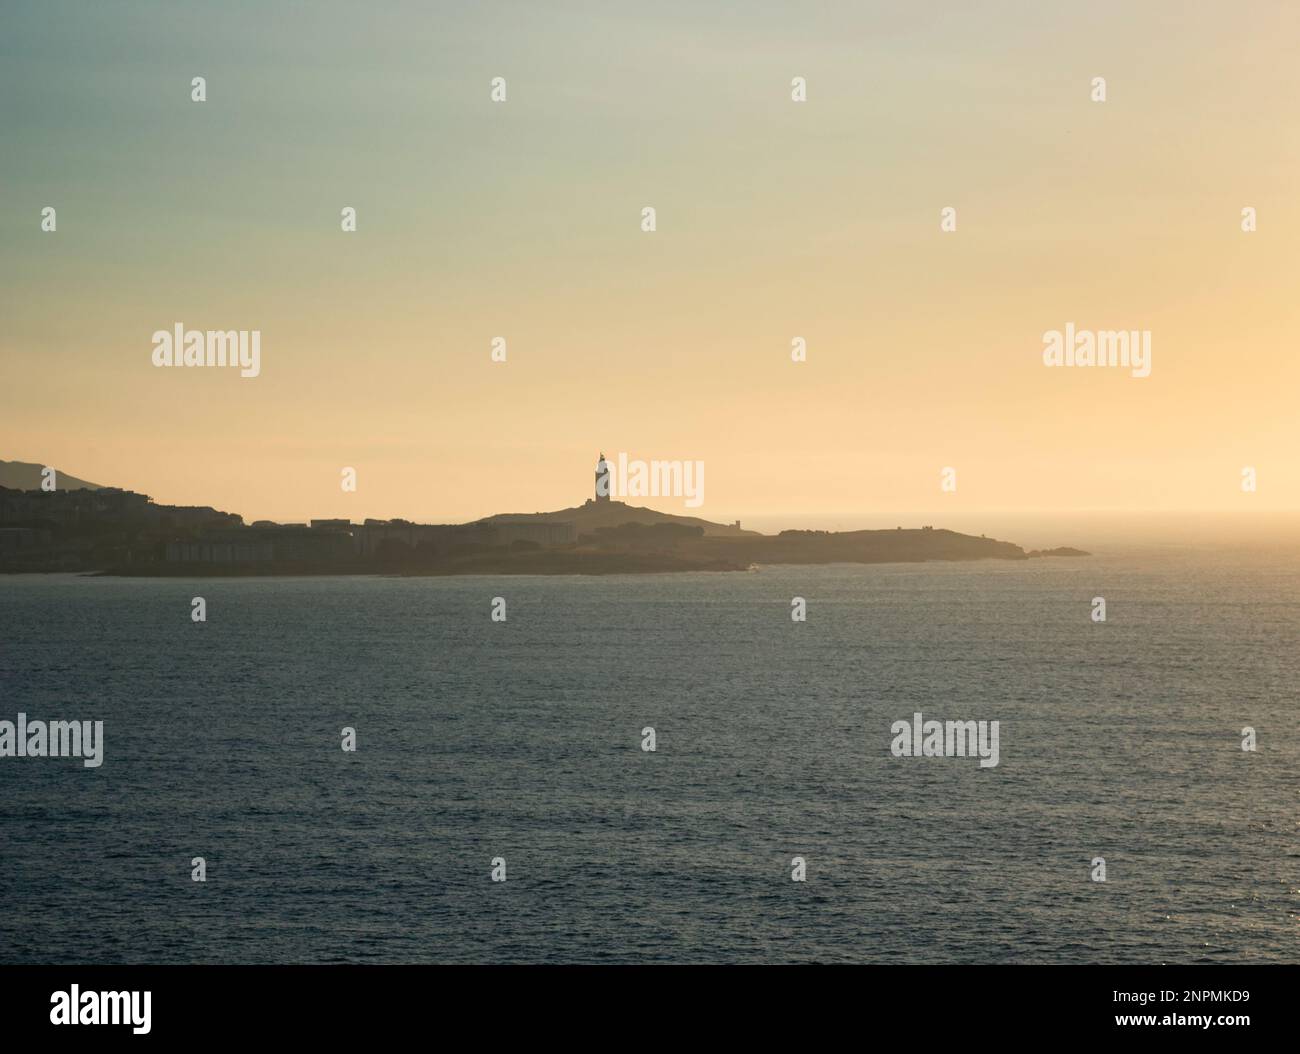 Turm des Herkules am Horizont, beleuchtet von den letzten Sonnenstrahlen bei Sonnenuntergang. Gelegen in Einem Coruña, Galicien, und von historischem Interesse, Kopie s Stockfoto